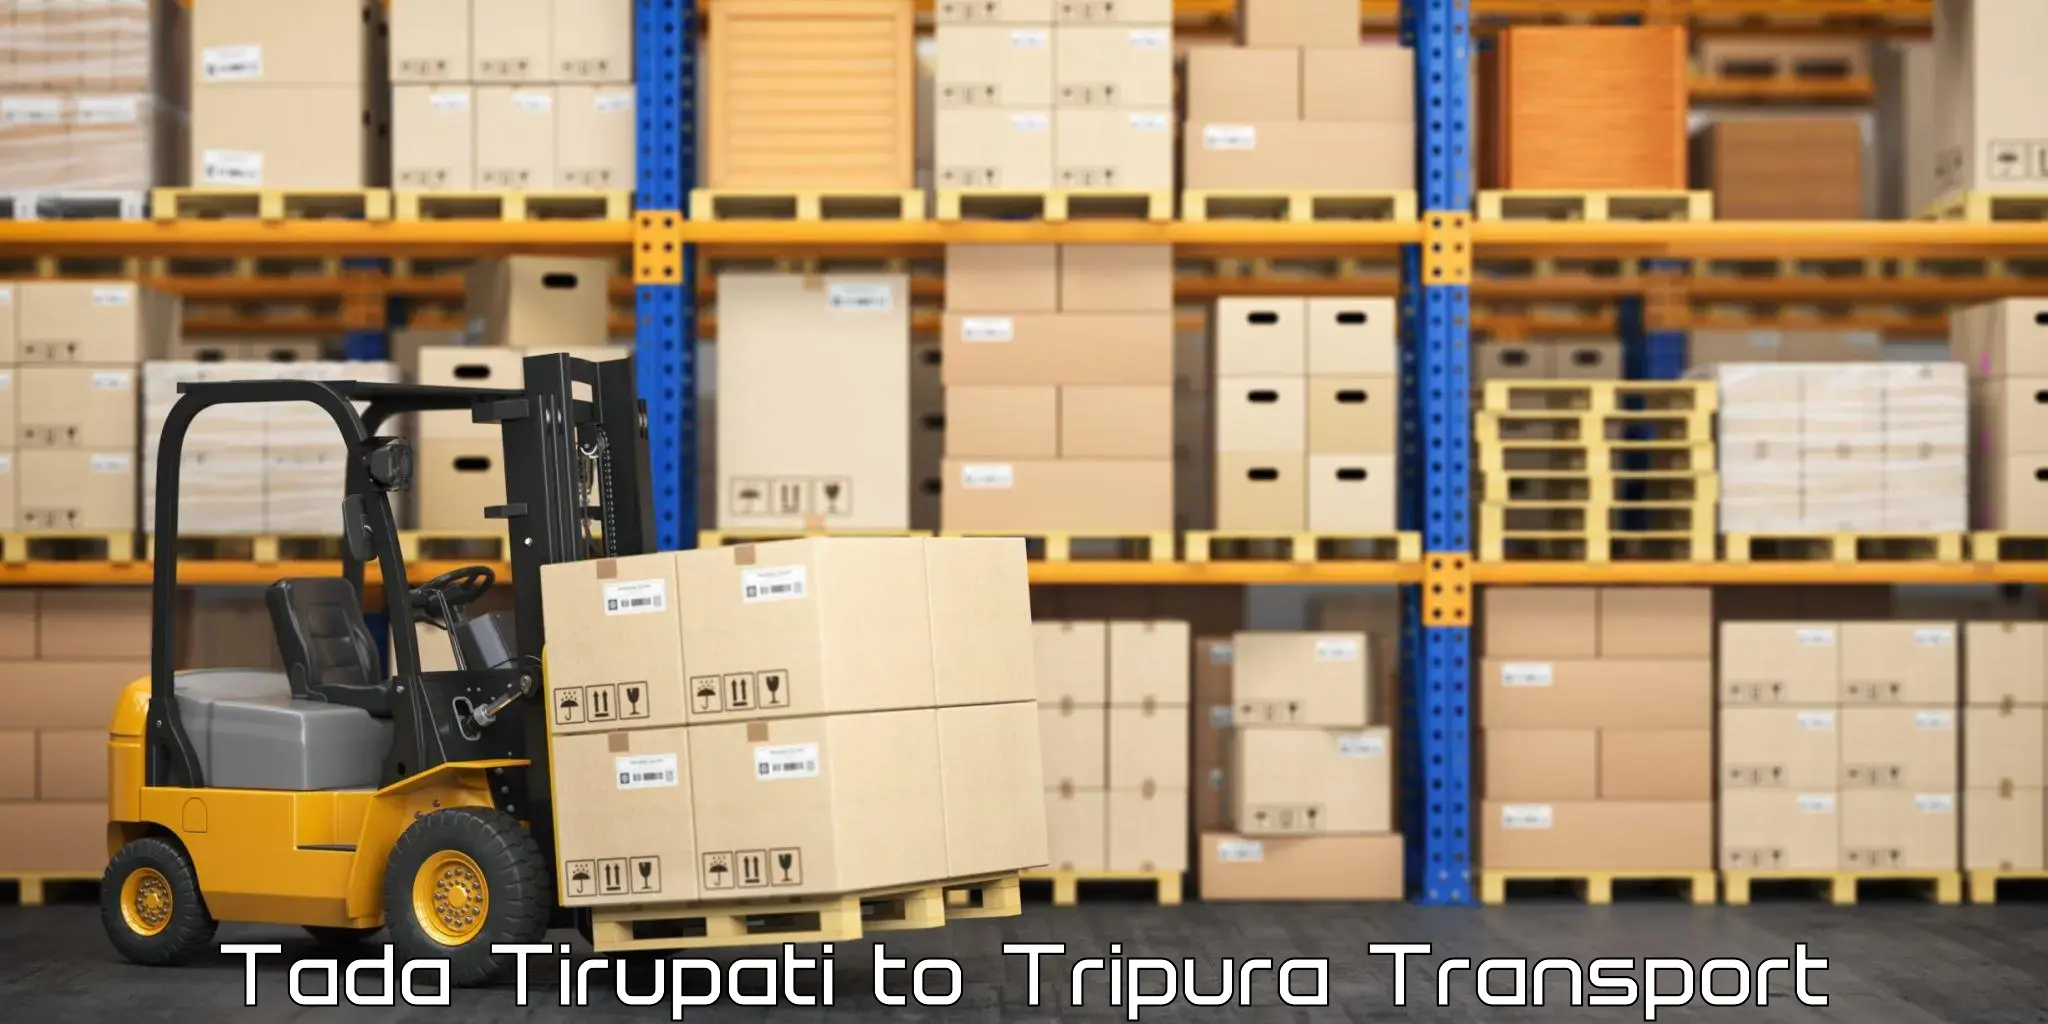 Transport in sharing Tada Tirupati to IIIT Agartala